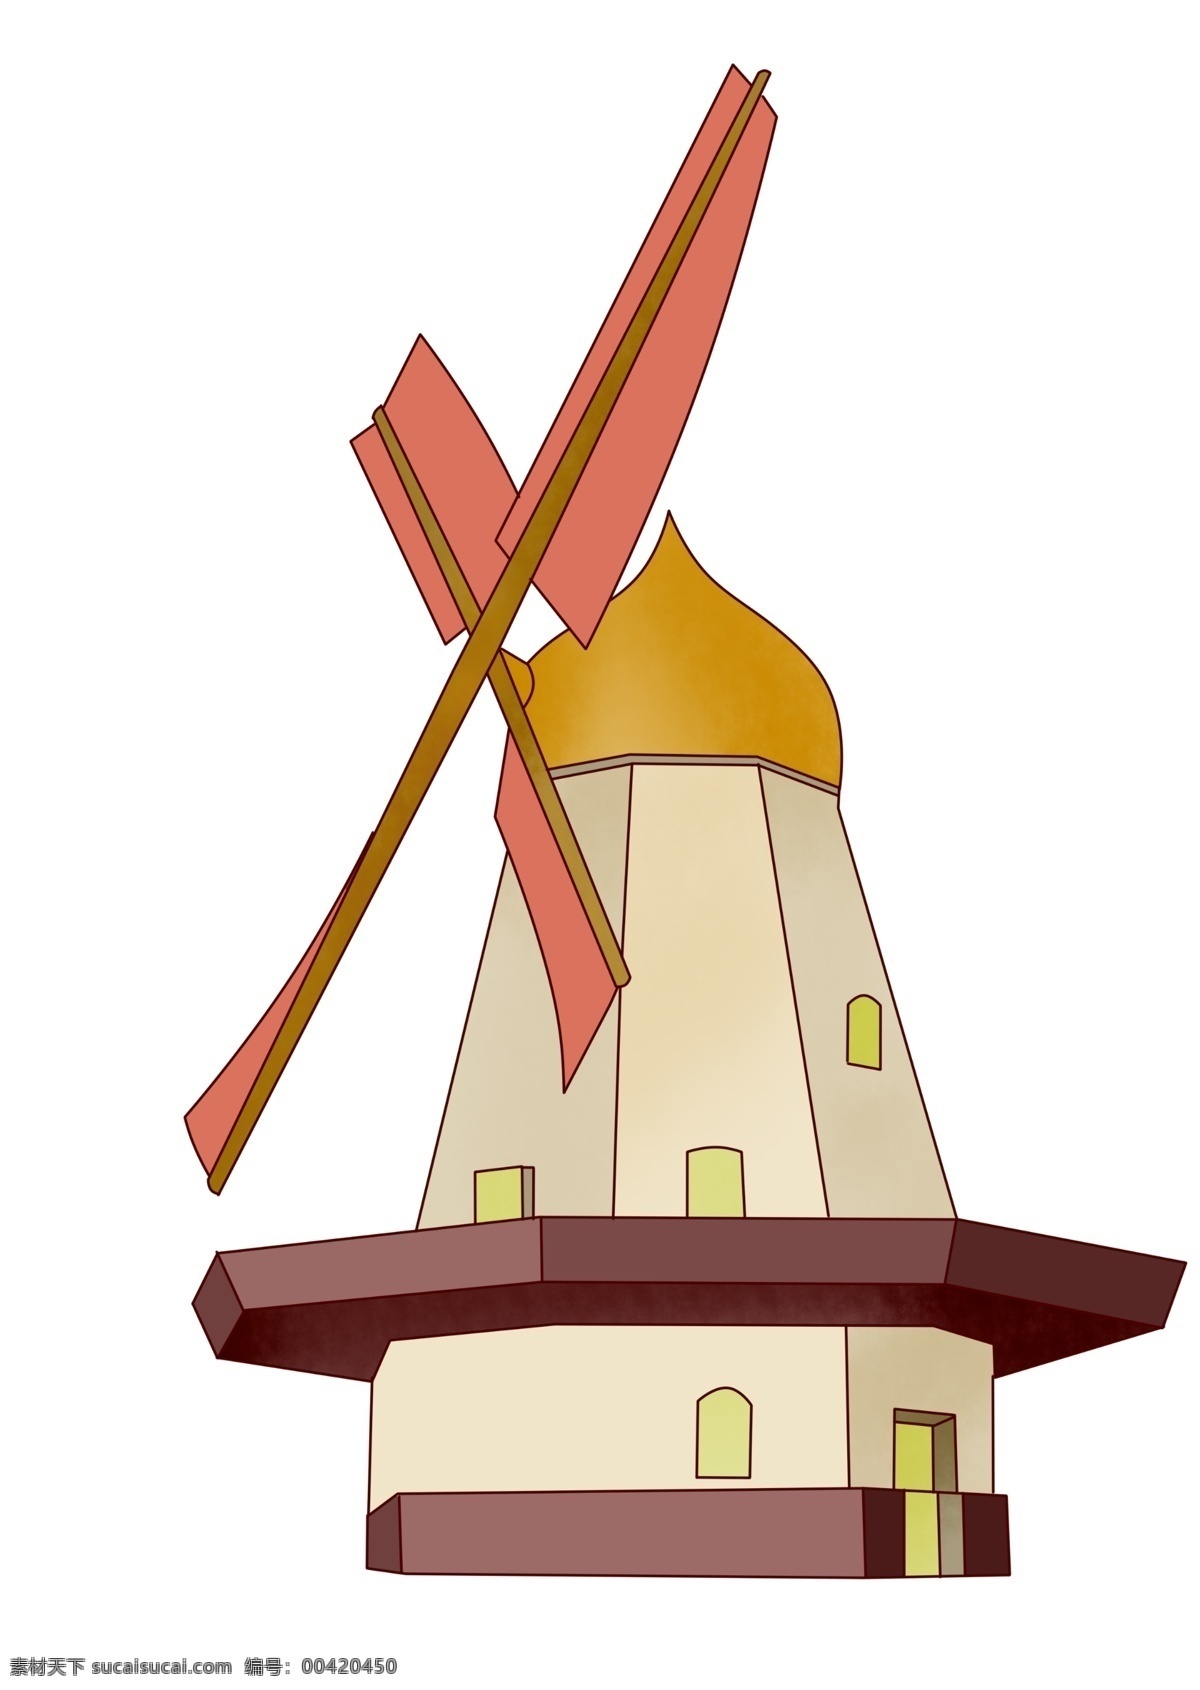 木质 风车 装饰 插画 黄红色的风车 漂亮的风车 创意风车 立体风车 精美风车 卡通风车 风车插画